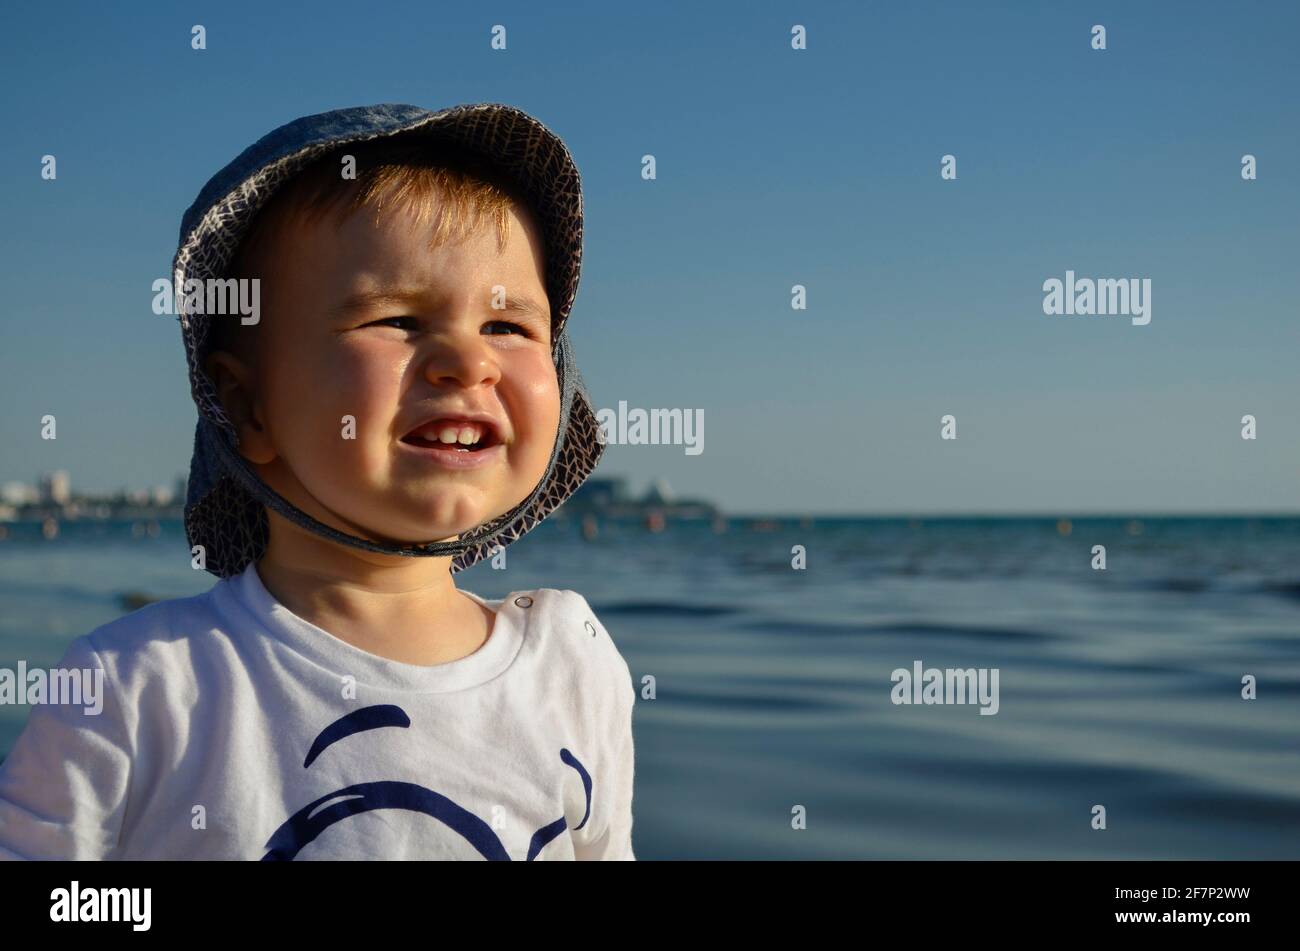 Emotionales Porträt eines Kindes hell erleuchtet. Wirkt konzentriert, schielt von der Sonne. An einem heißen Sommertag am Ufer einen Hut gegen das blaue Meer und den blauen Himmel tragen. Stockfoto